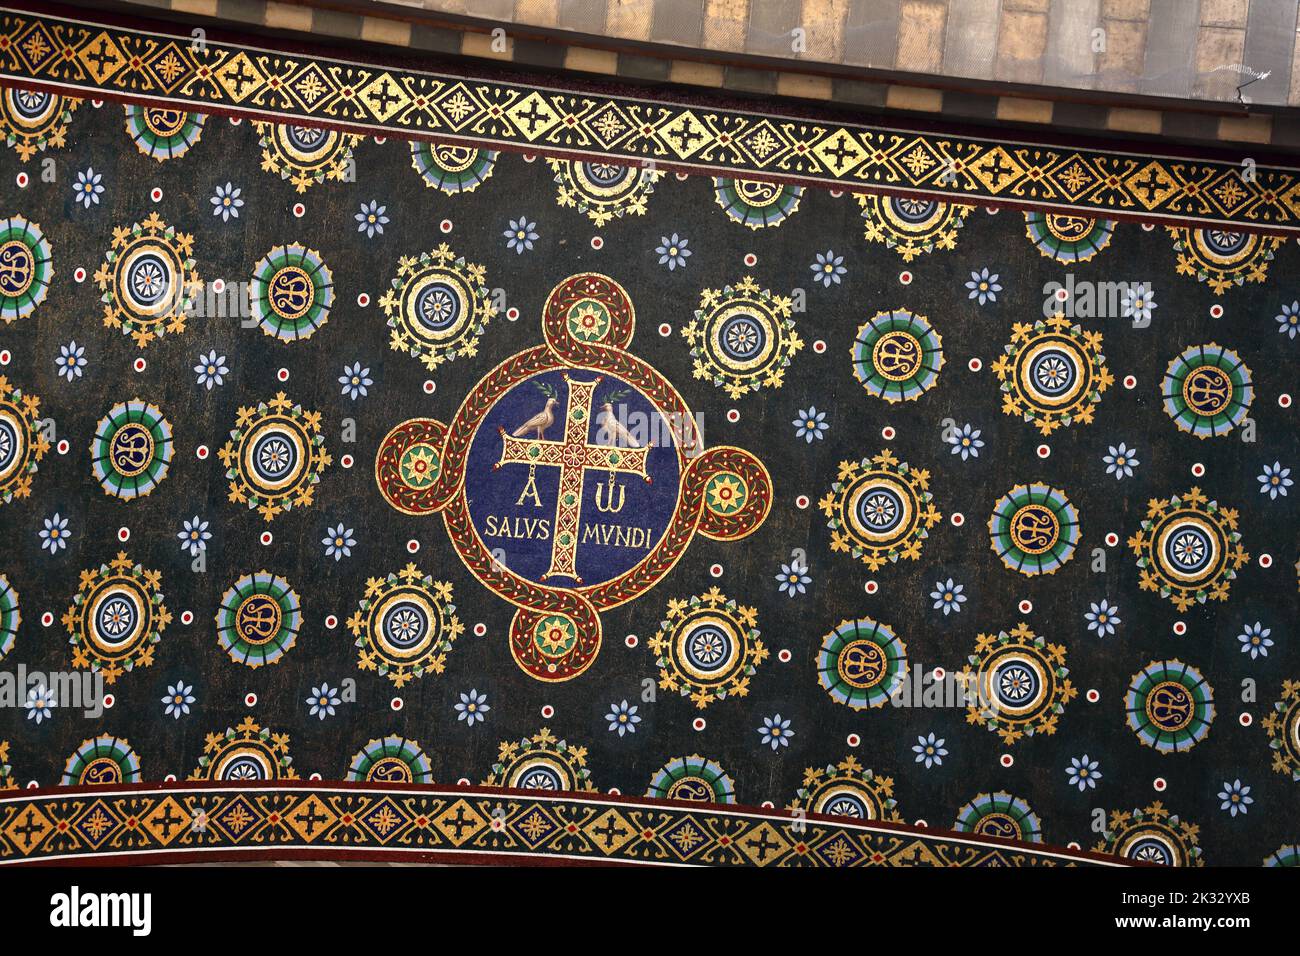 Cathédrale Sainte-Marie-majeure (Cathédrale Sainte-Marie majeure) détail de la croix sur le plafond de l'Arche à l'entrée Marseille France Banque D'Images